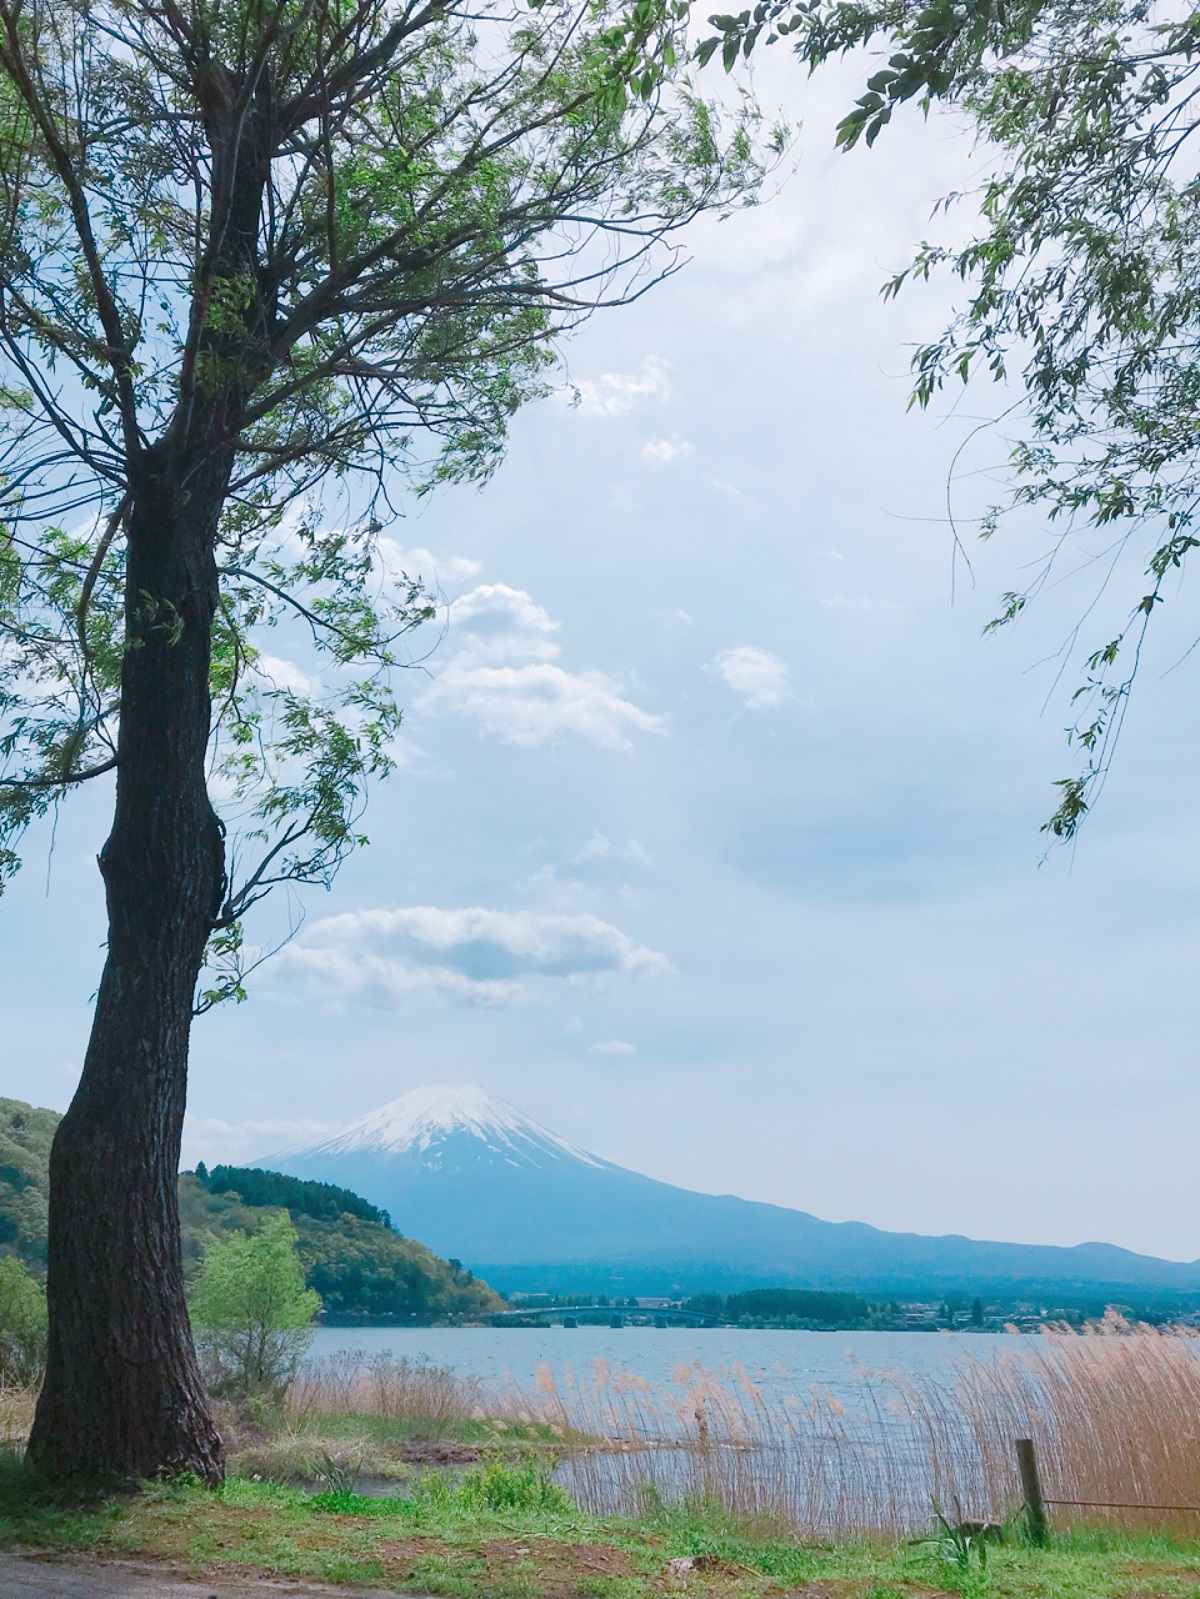 <p class="Normal" style="text-align:justify;"> Bức ảnh nhìn từ mặt hồ trong xanh, phẳng lặng giúp <span>núi Phú Sĩ trở nên lung linh, mờ ảo.</span></p>